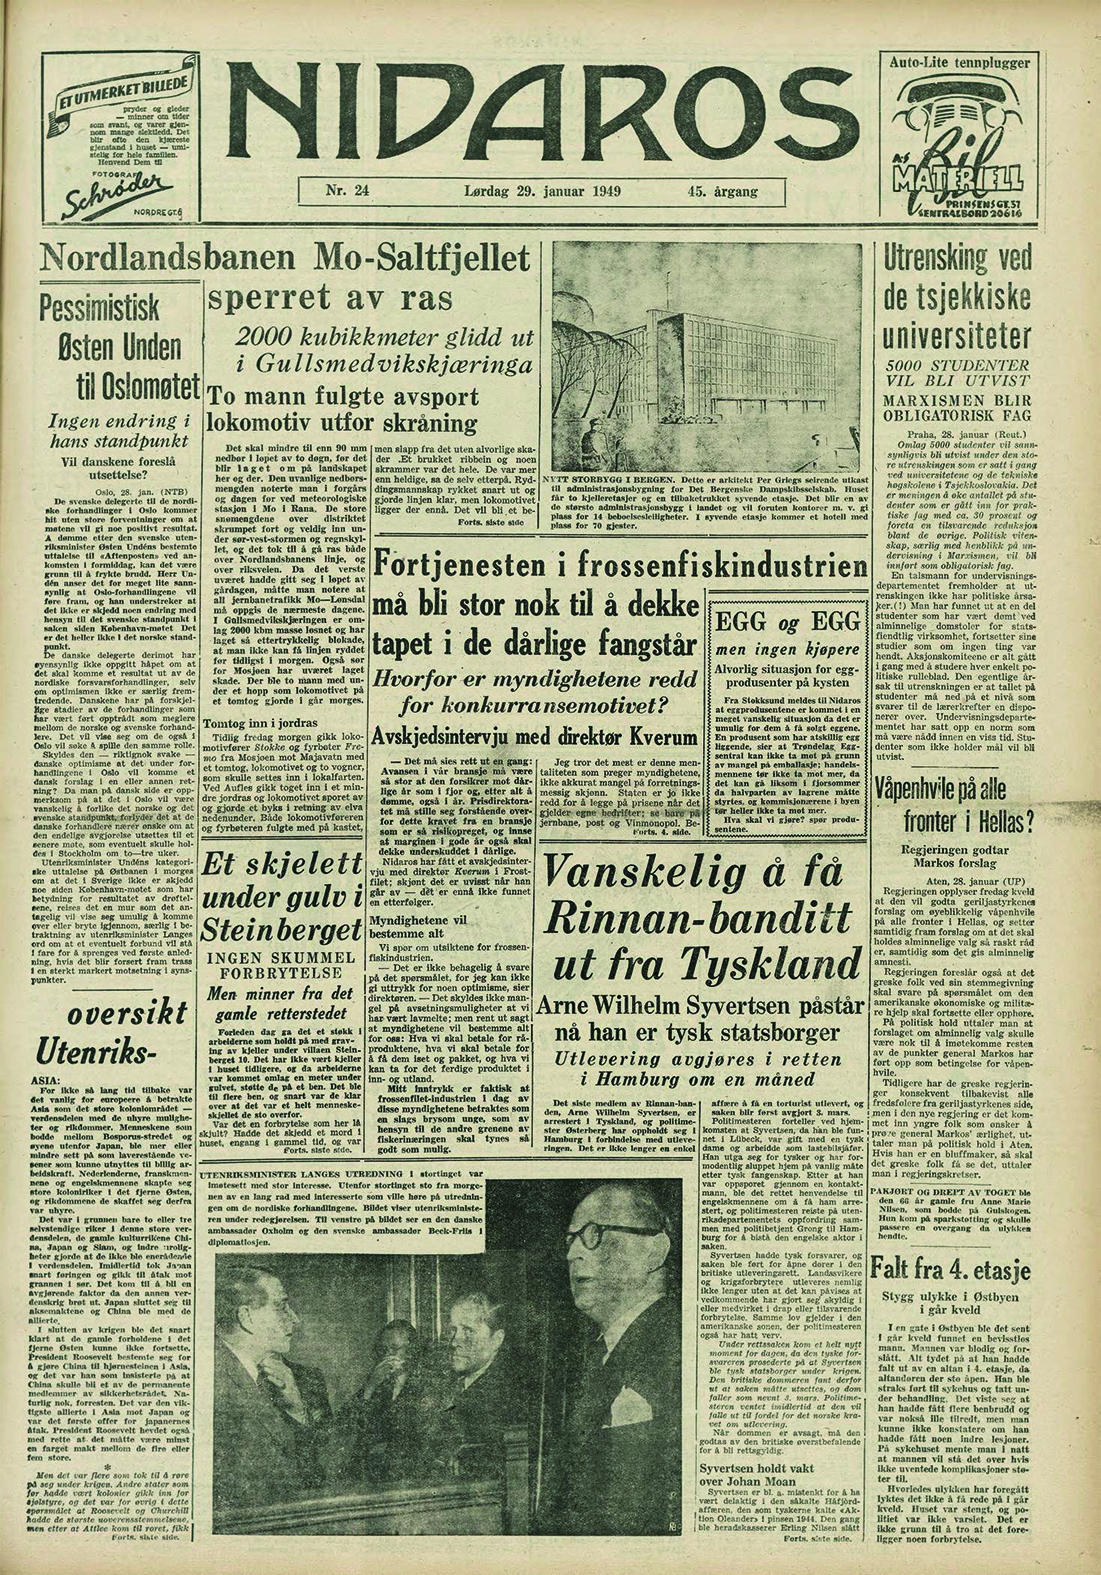 Bilde av avis-forside